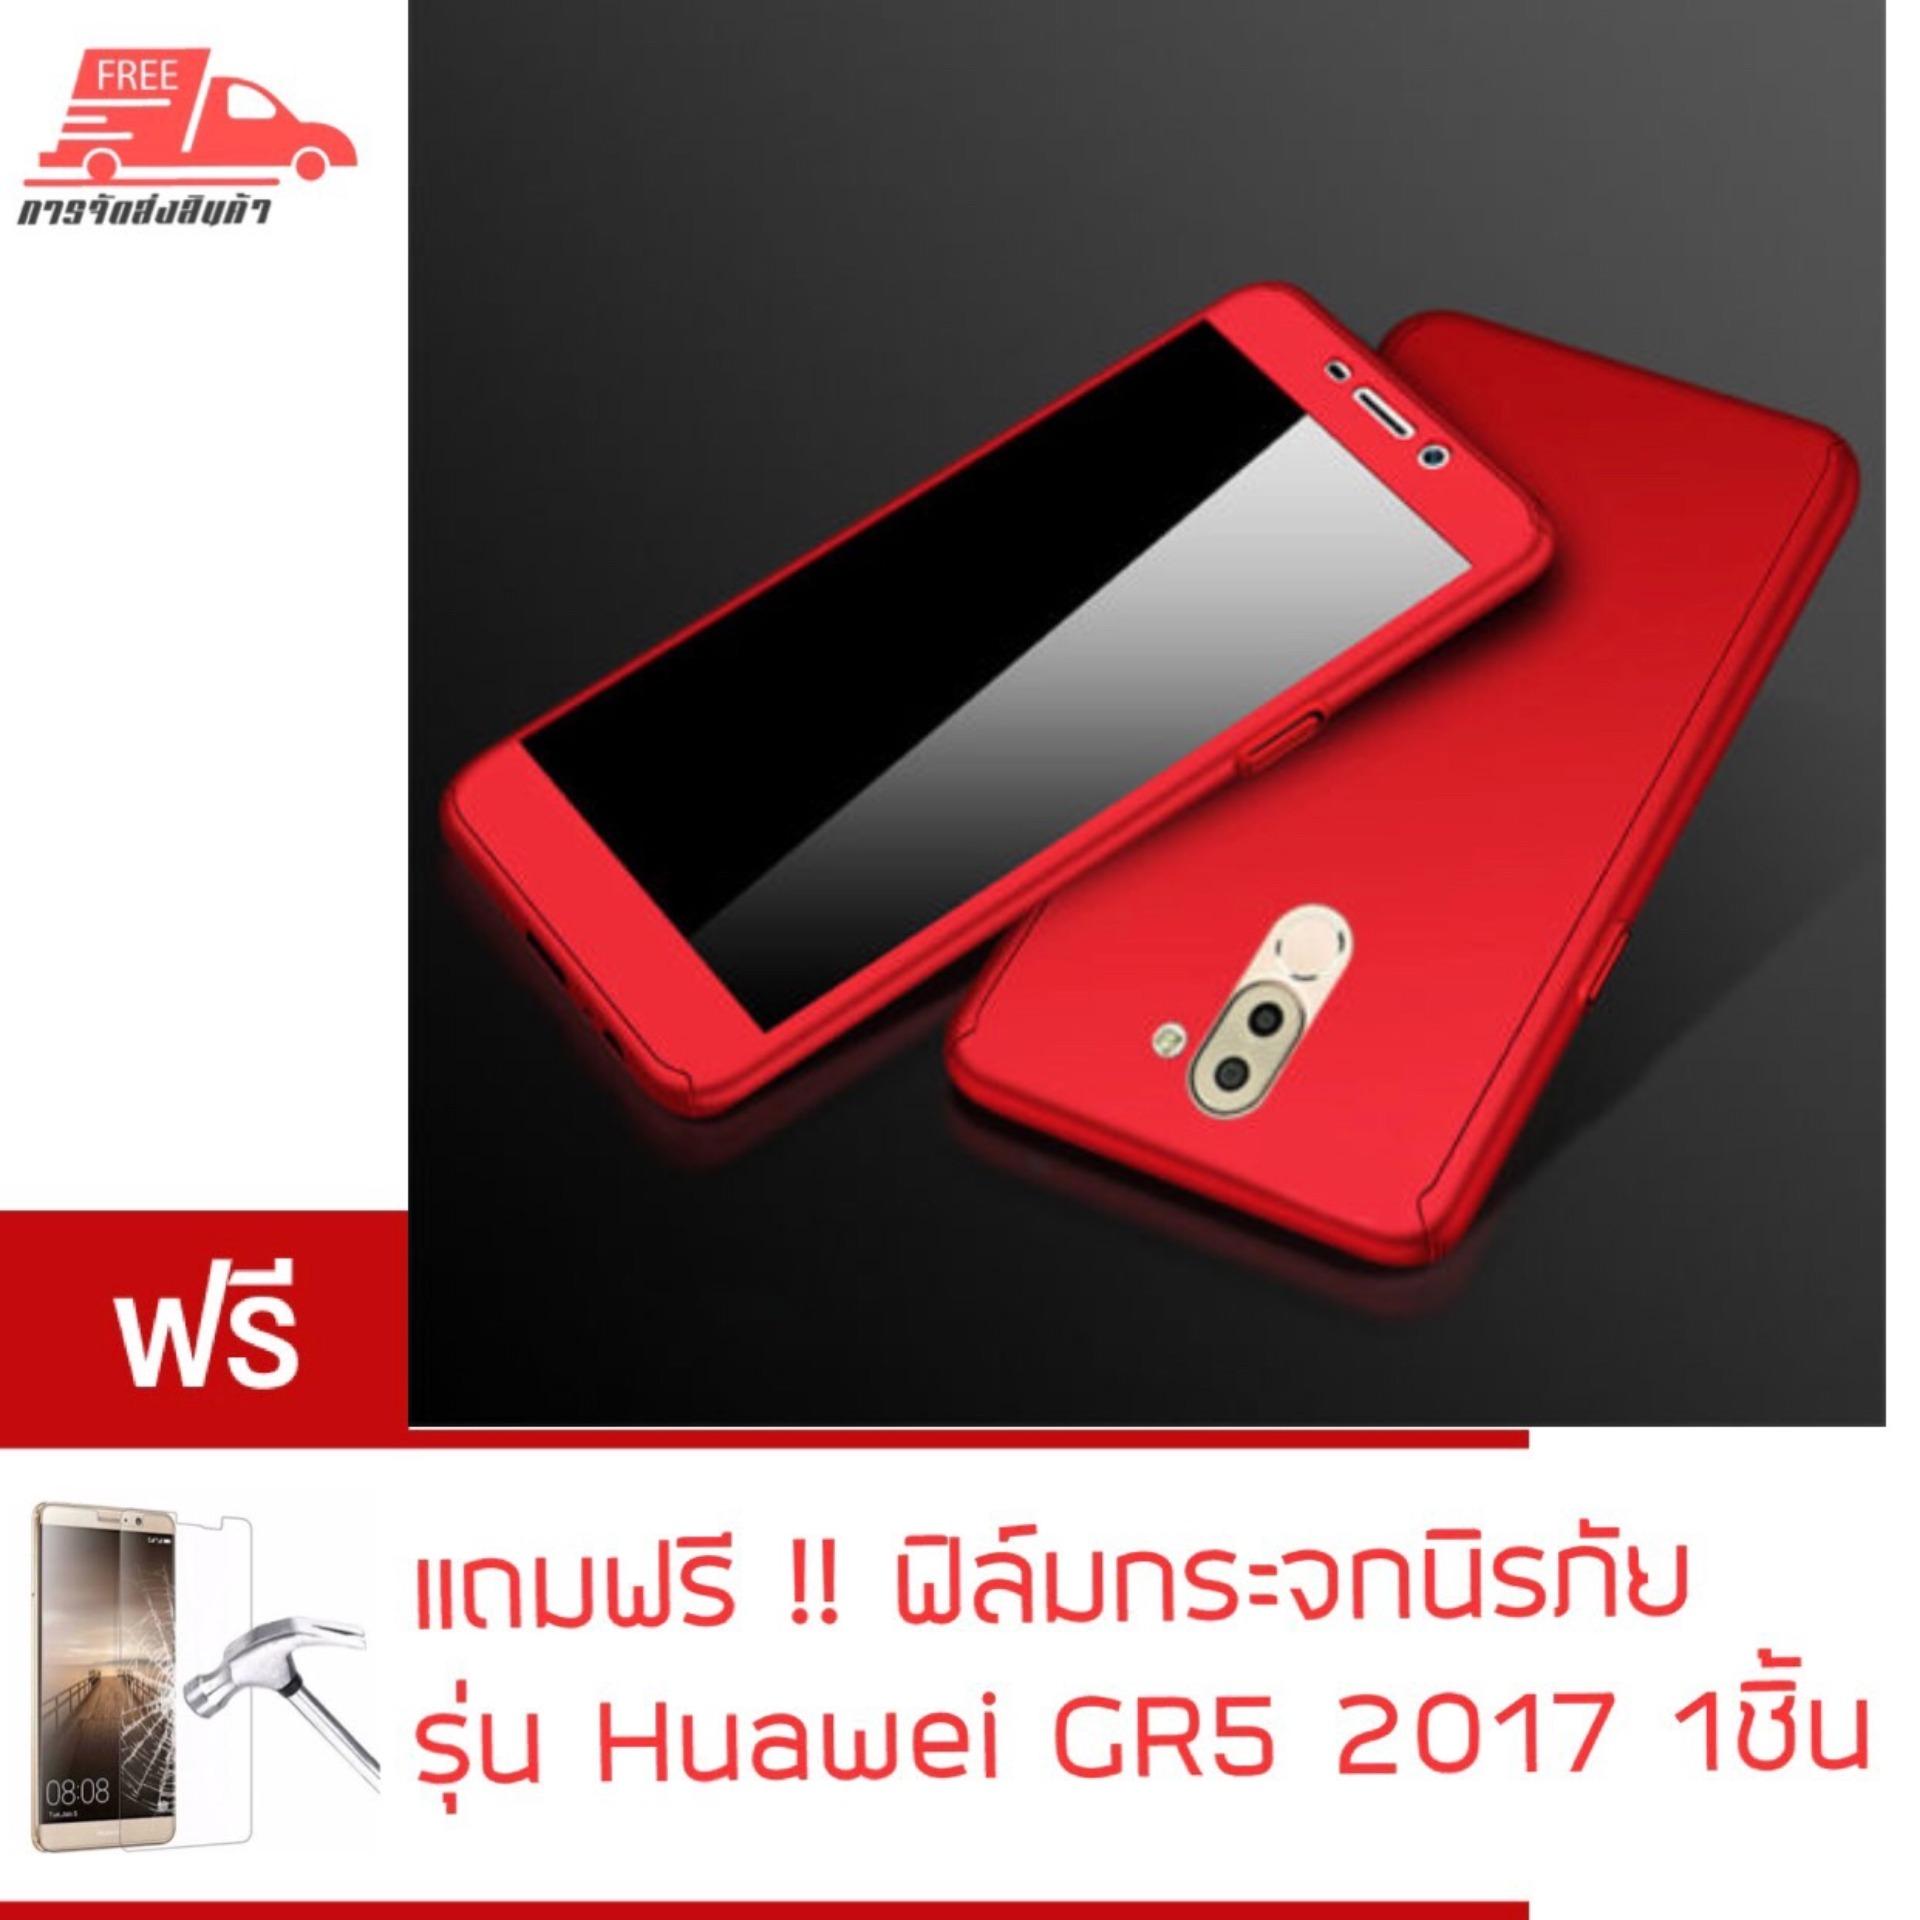 พร้อมส่ง!! Case Huawei GR5 2017 เคสหัวเหว่ย จีอาร์ห้า 2017 Case เคสประกบ 360 องศา สวยและบางมาก Huawei GR5 2017 Case 360 เคสประกบ TPU ขายดีสุด รับประกันความพอใจ ไม่ถูกใจยินดีคืนเงิน 100%